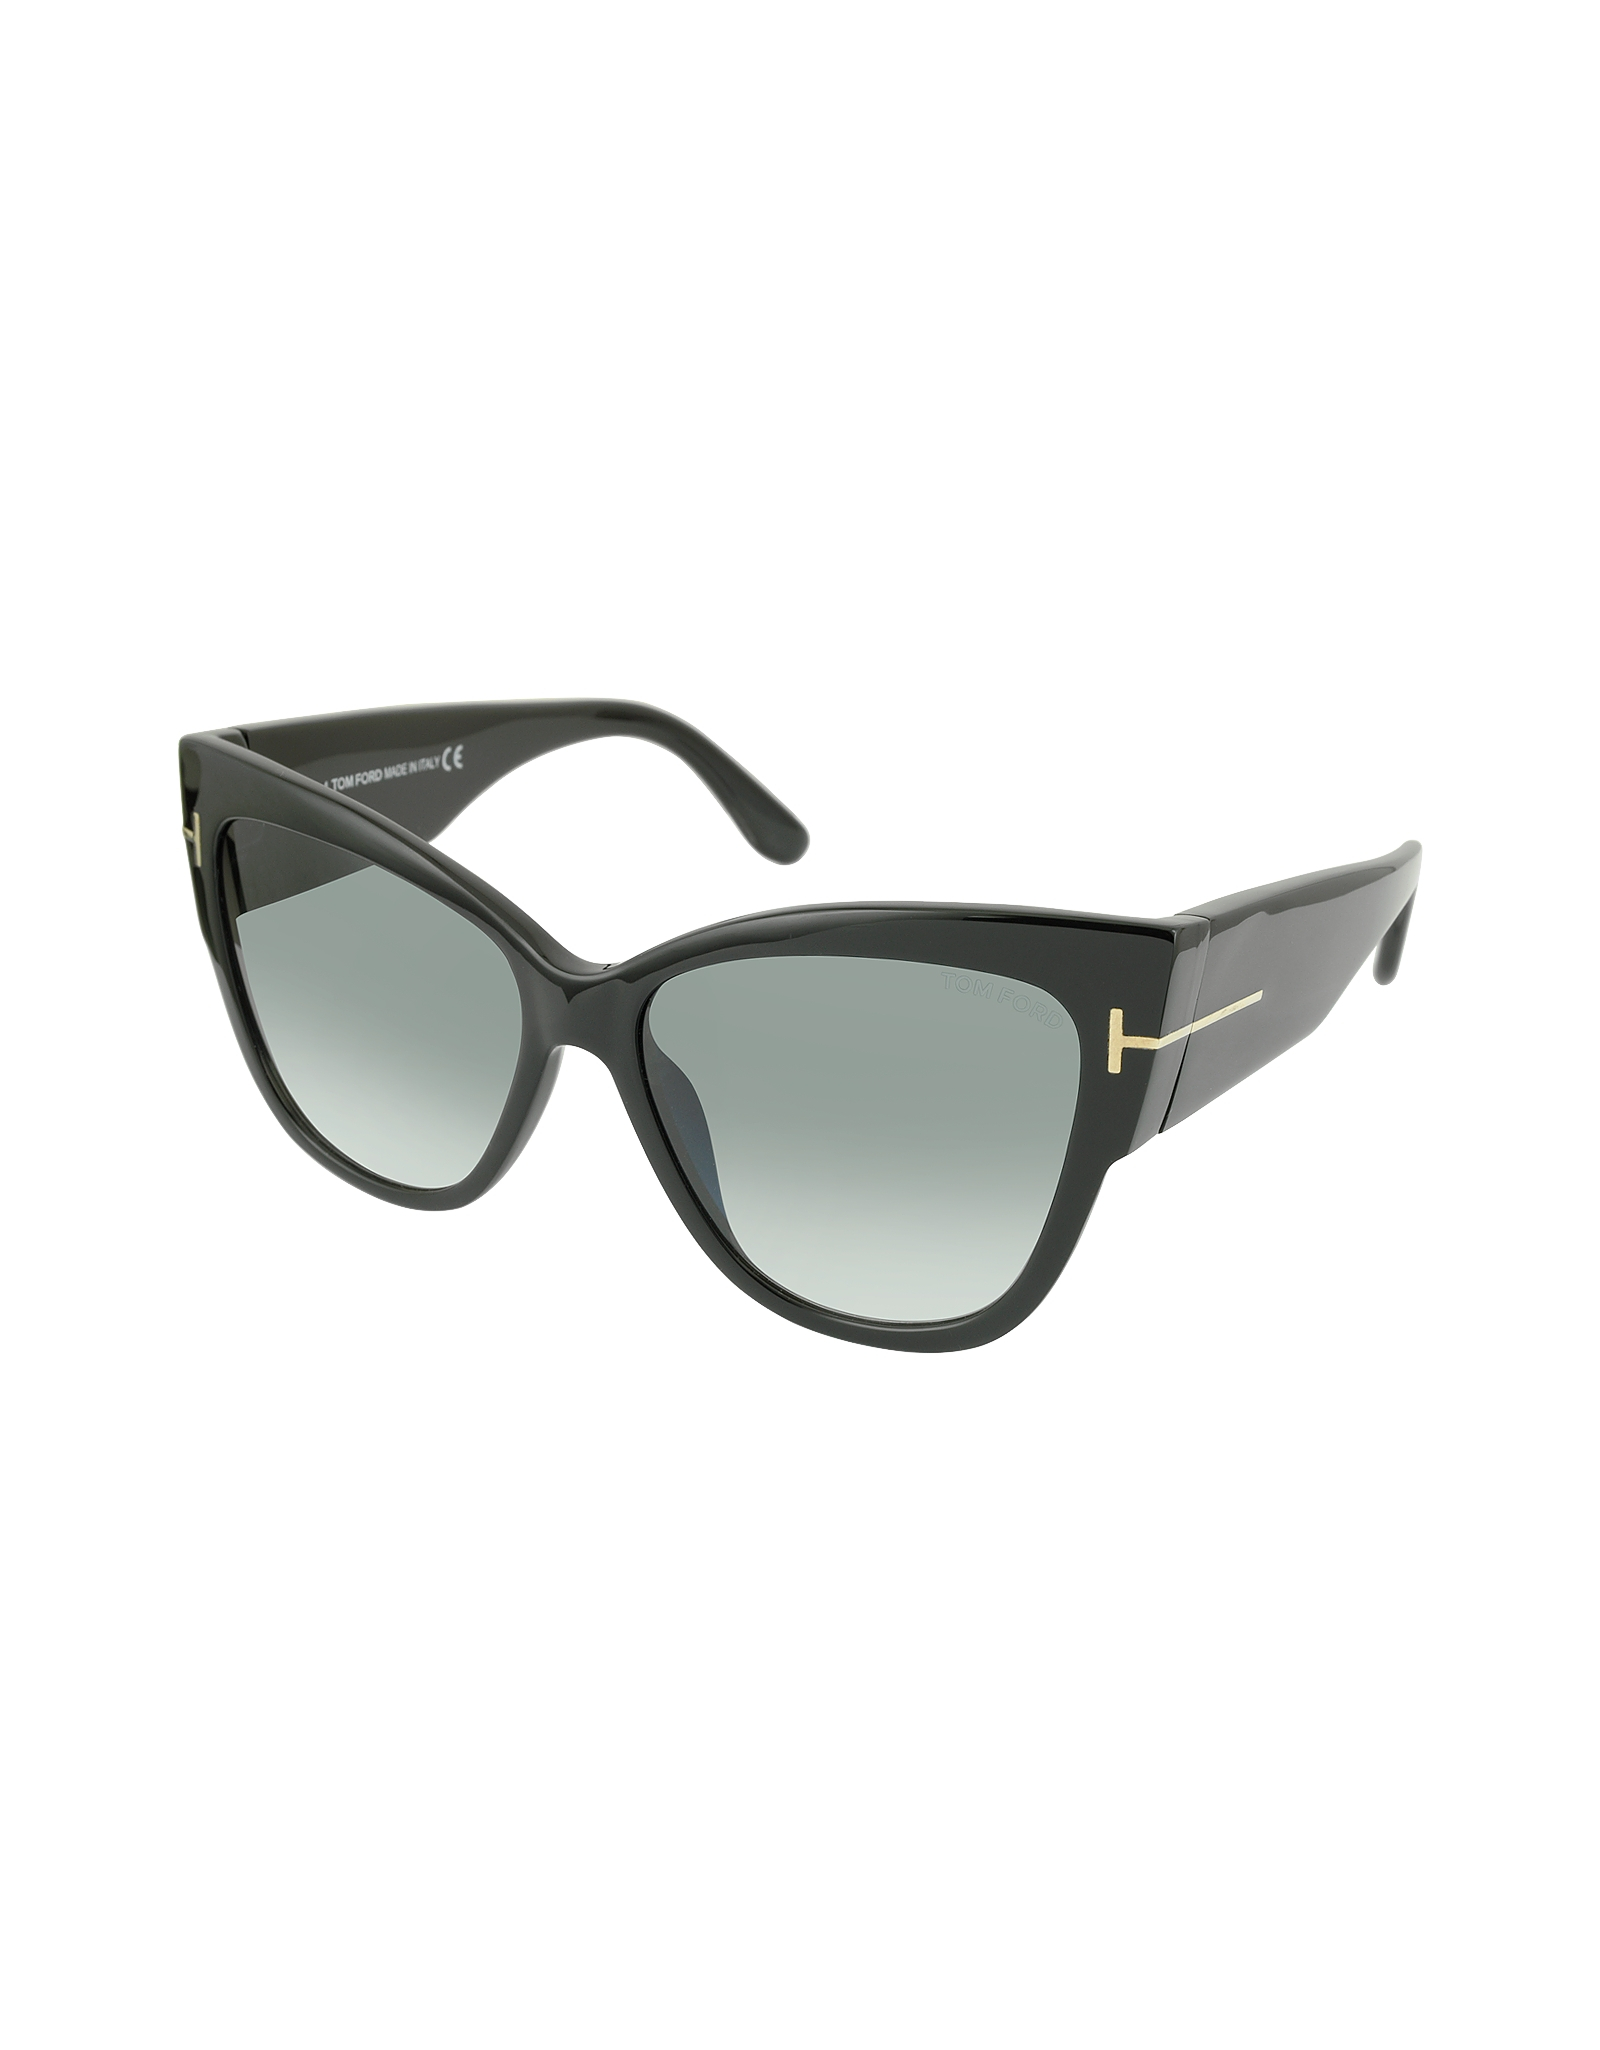 Lyst - Tom Ford Anoushka Ft0371 01b Black Cat Eye Sunglasses in Black